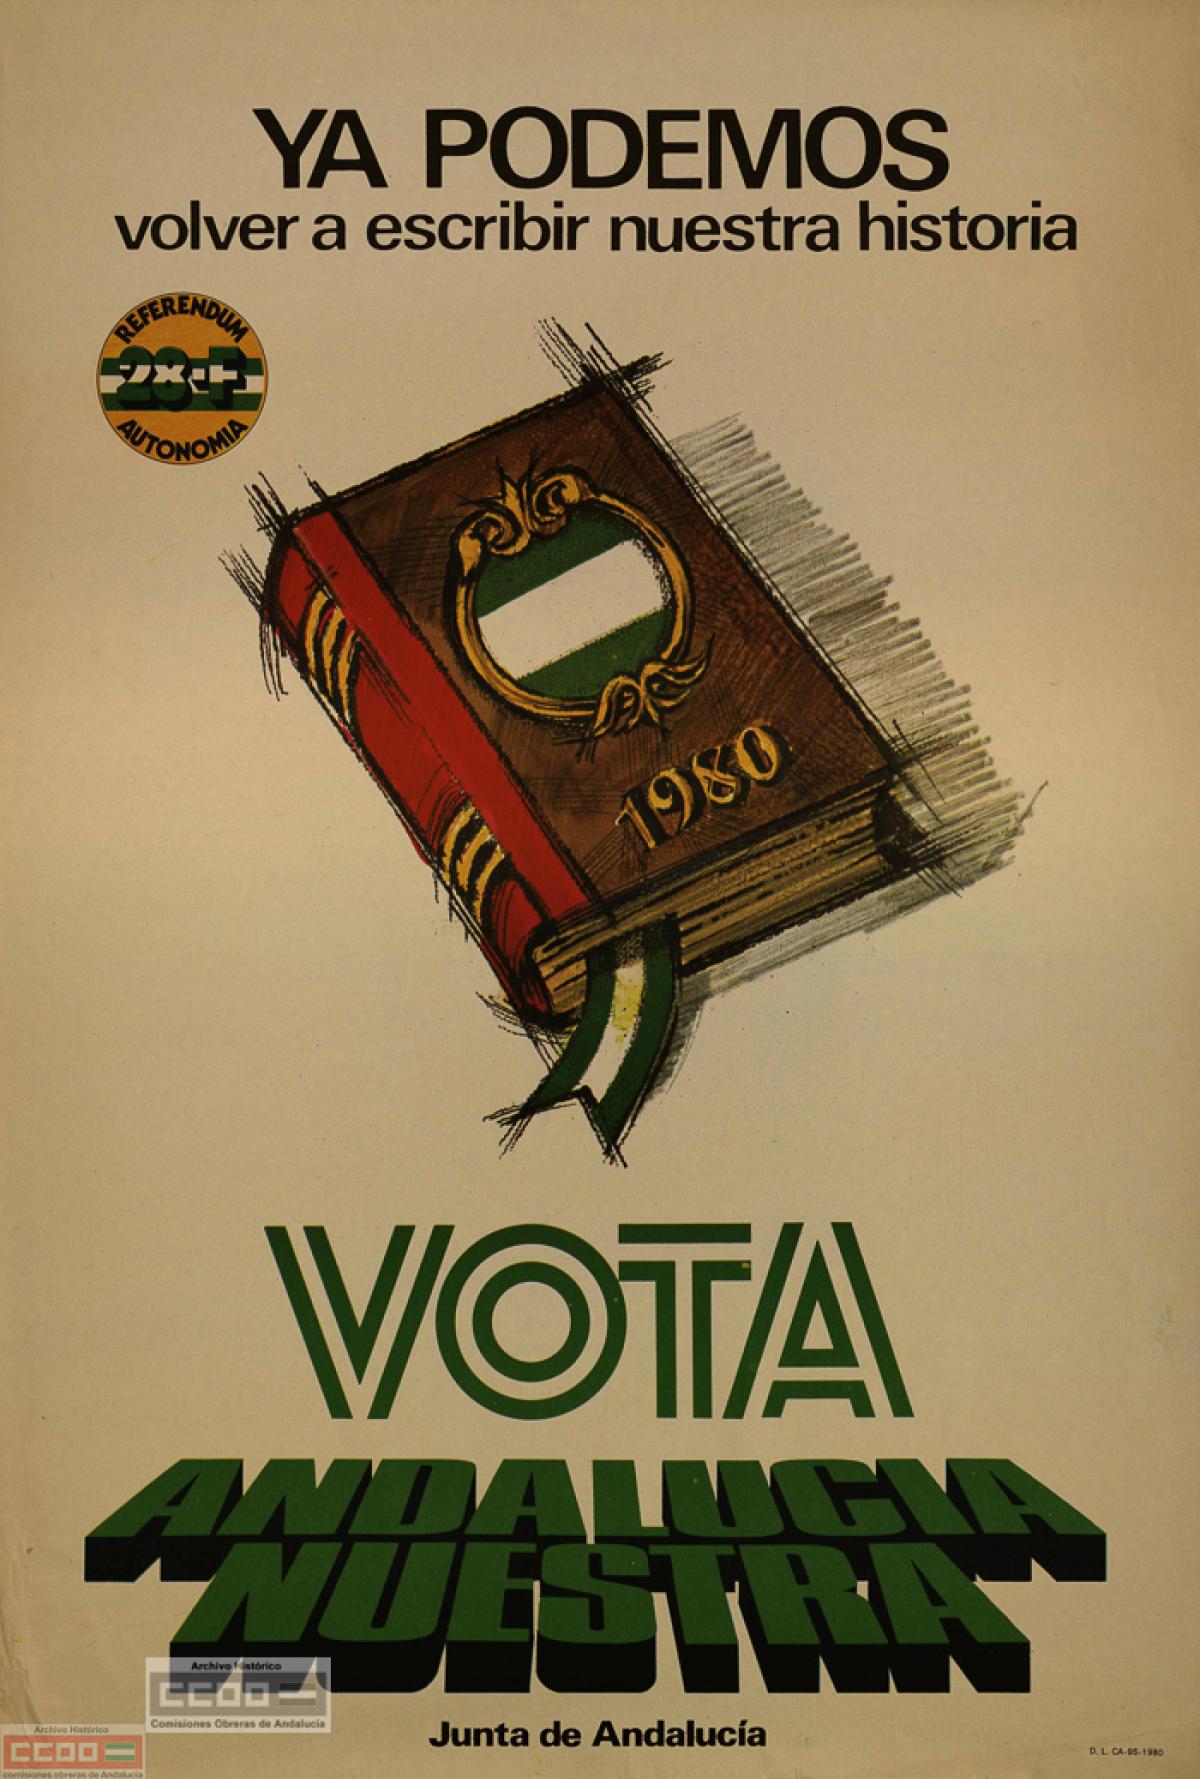 Cartel de la Junta de Andalucía para el referéndum del 28F, 1980